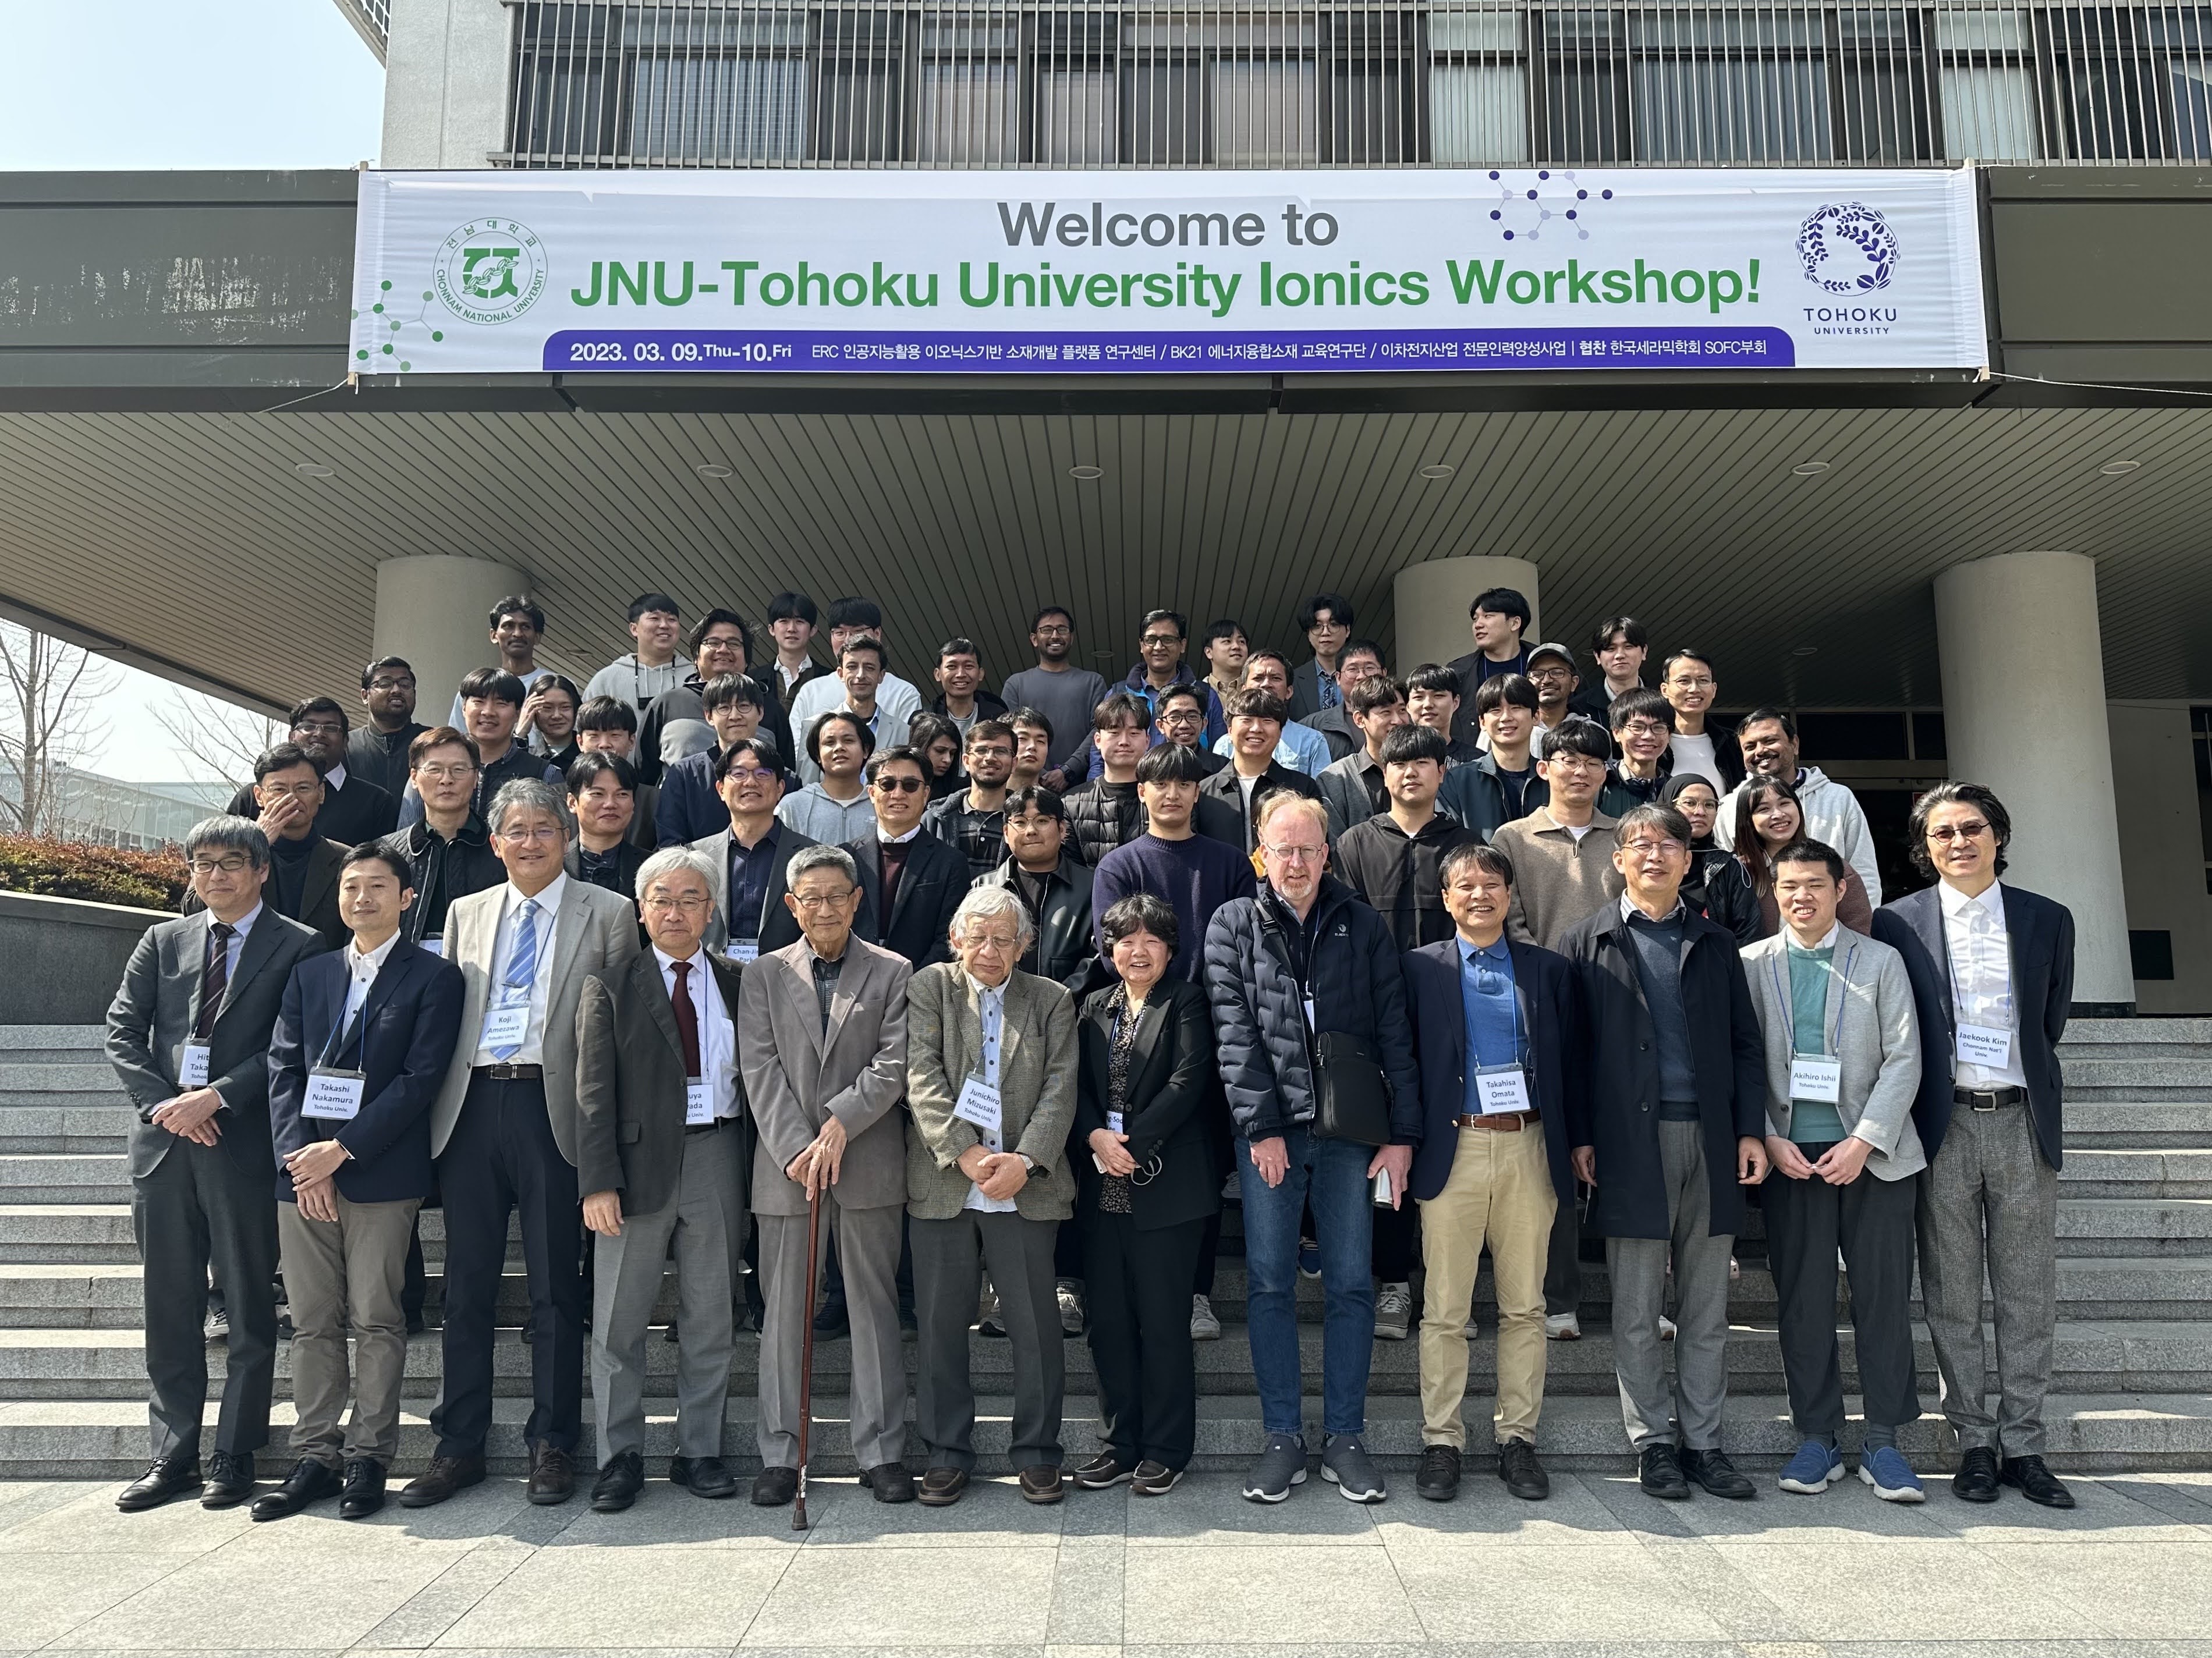 教授 髙村と助教 石井が全南国立大学 (光州, 韓国) を訪問し、イオニクスワークショップに出席して発表してきました。